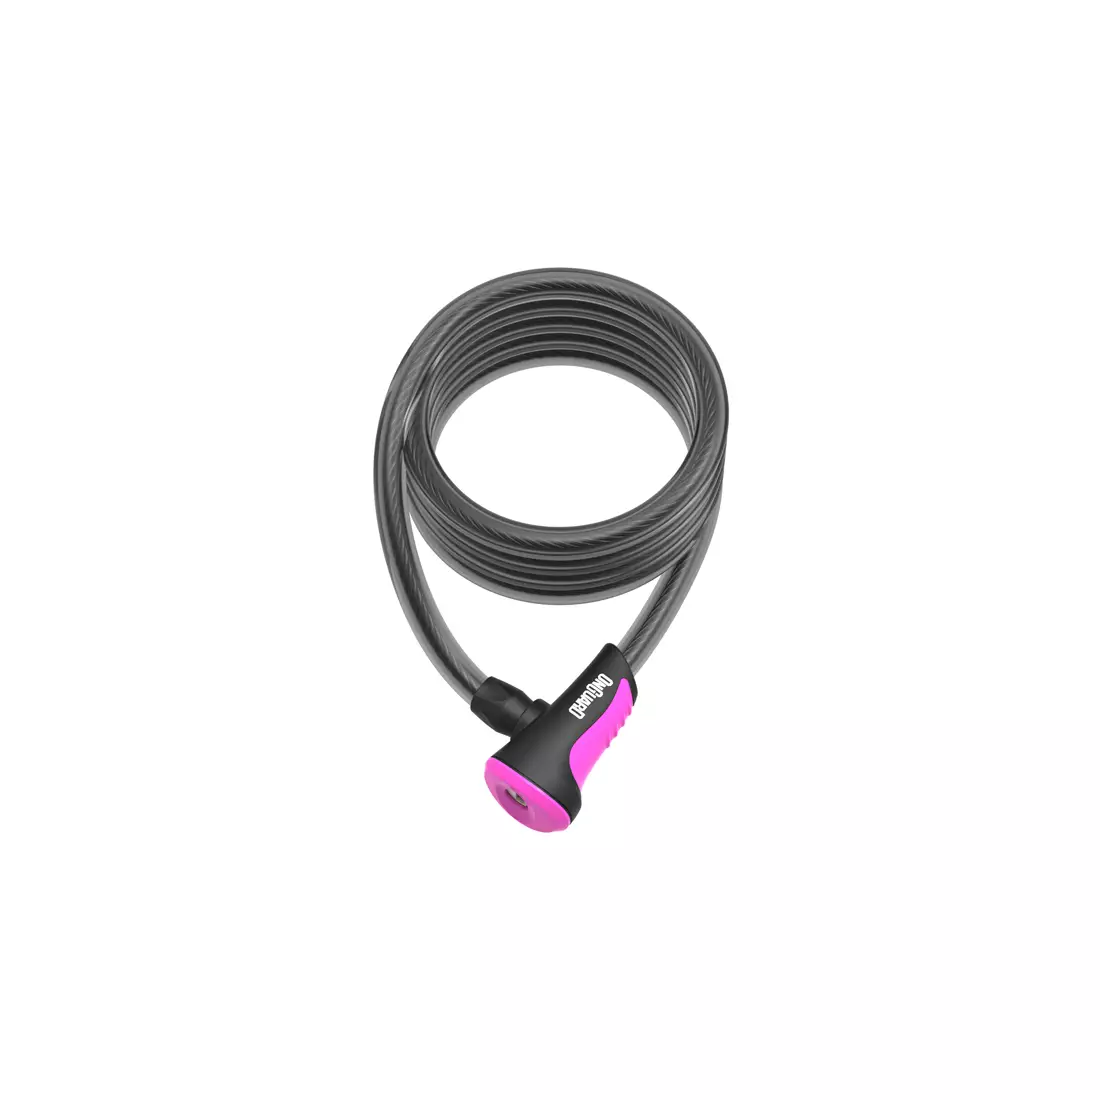 ONGUARD kerékpár csat neon 10mm 180cm + 2 x kulcsok kóddal pink ONG-8157PN